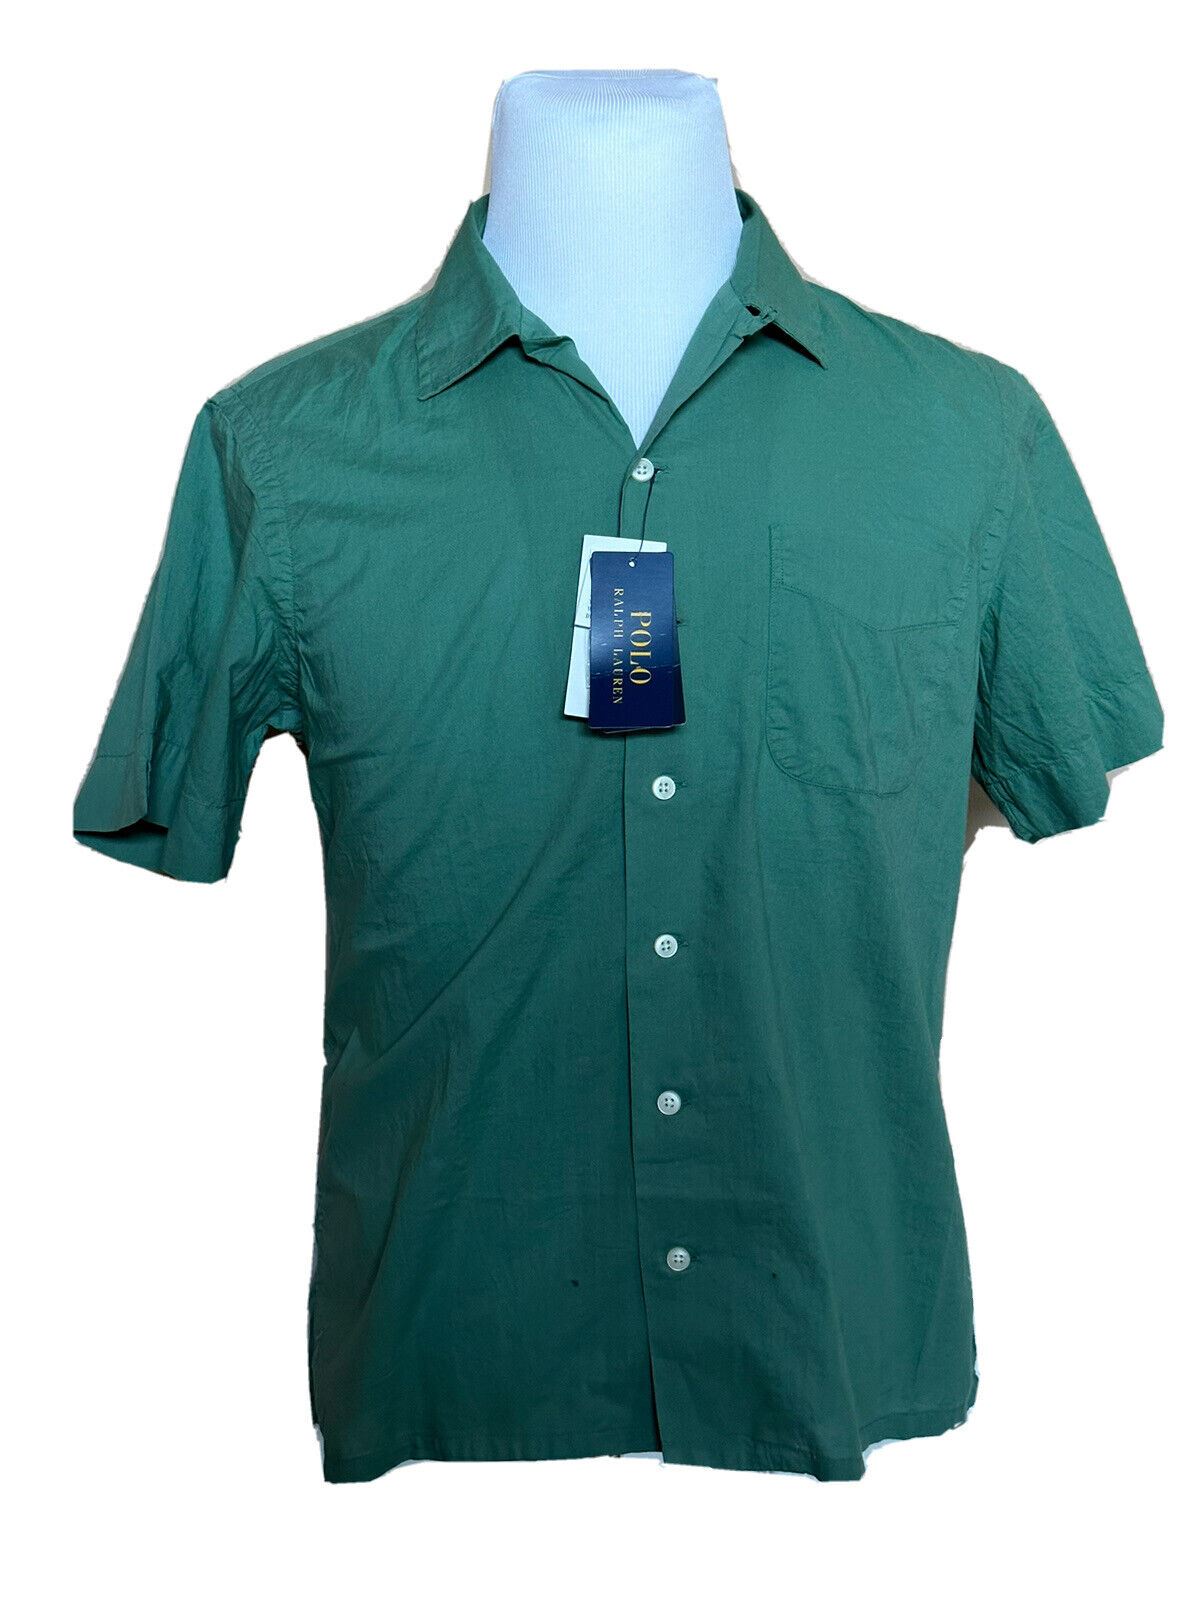 NWT Polo Ralph Lauren Men's Green Short Sleeve Dress Shirt 2XL Made in India